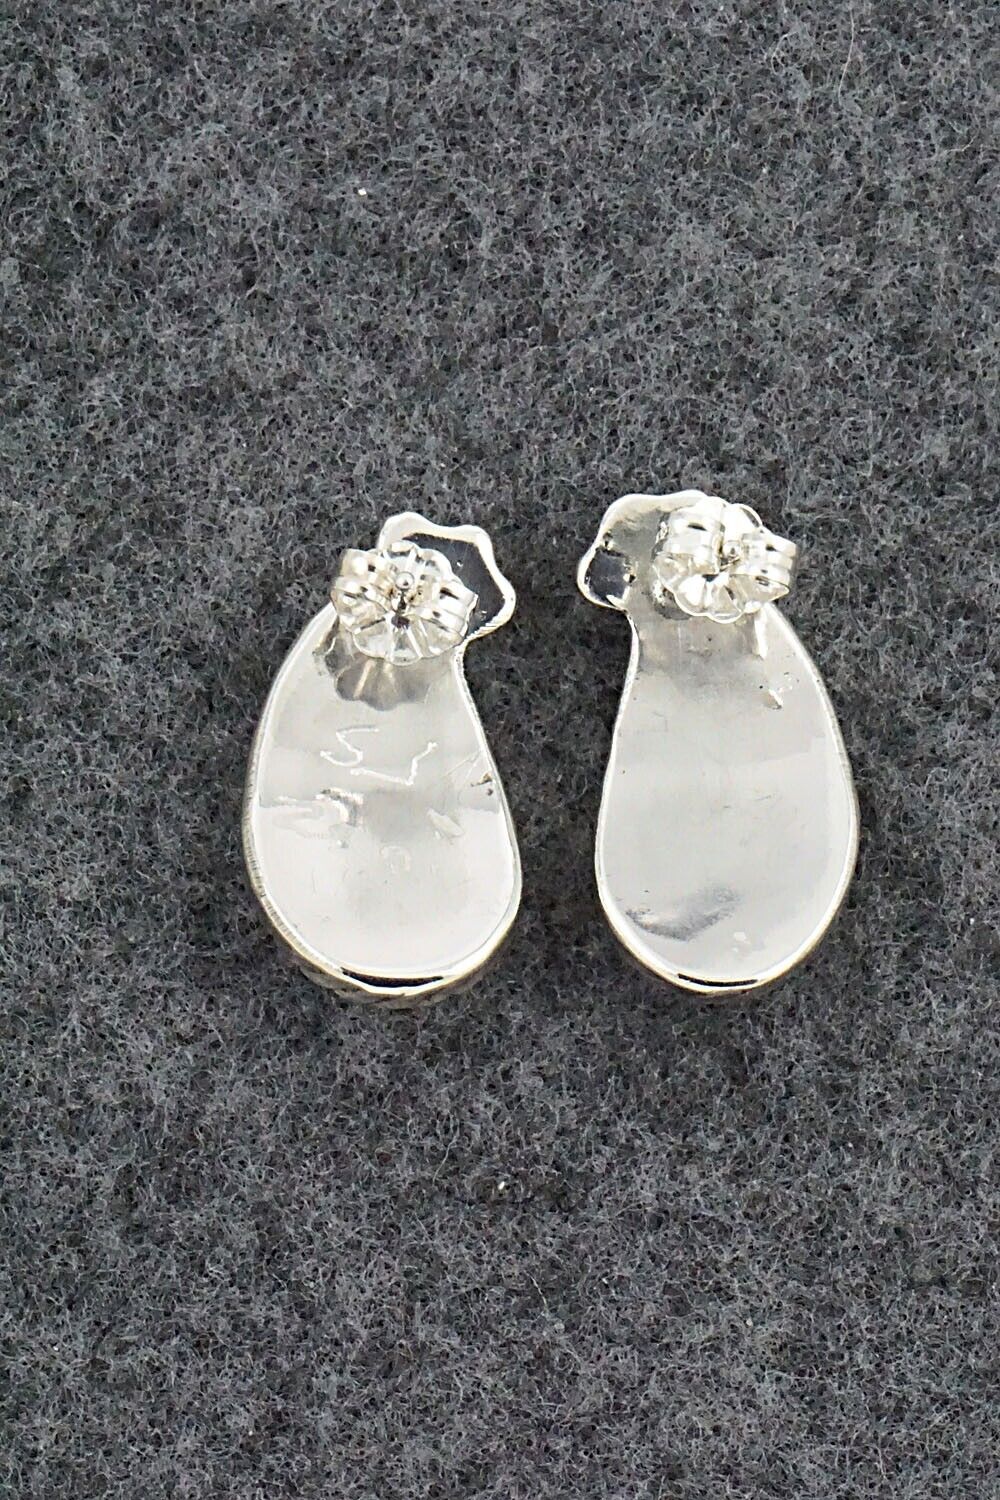 Opalite & Sterling Silver Earrings - Susie Lowsayatee